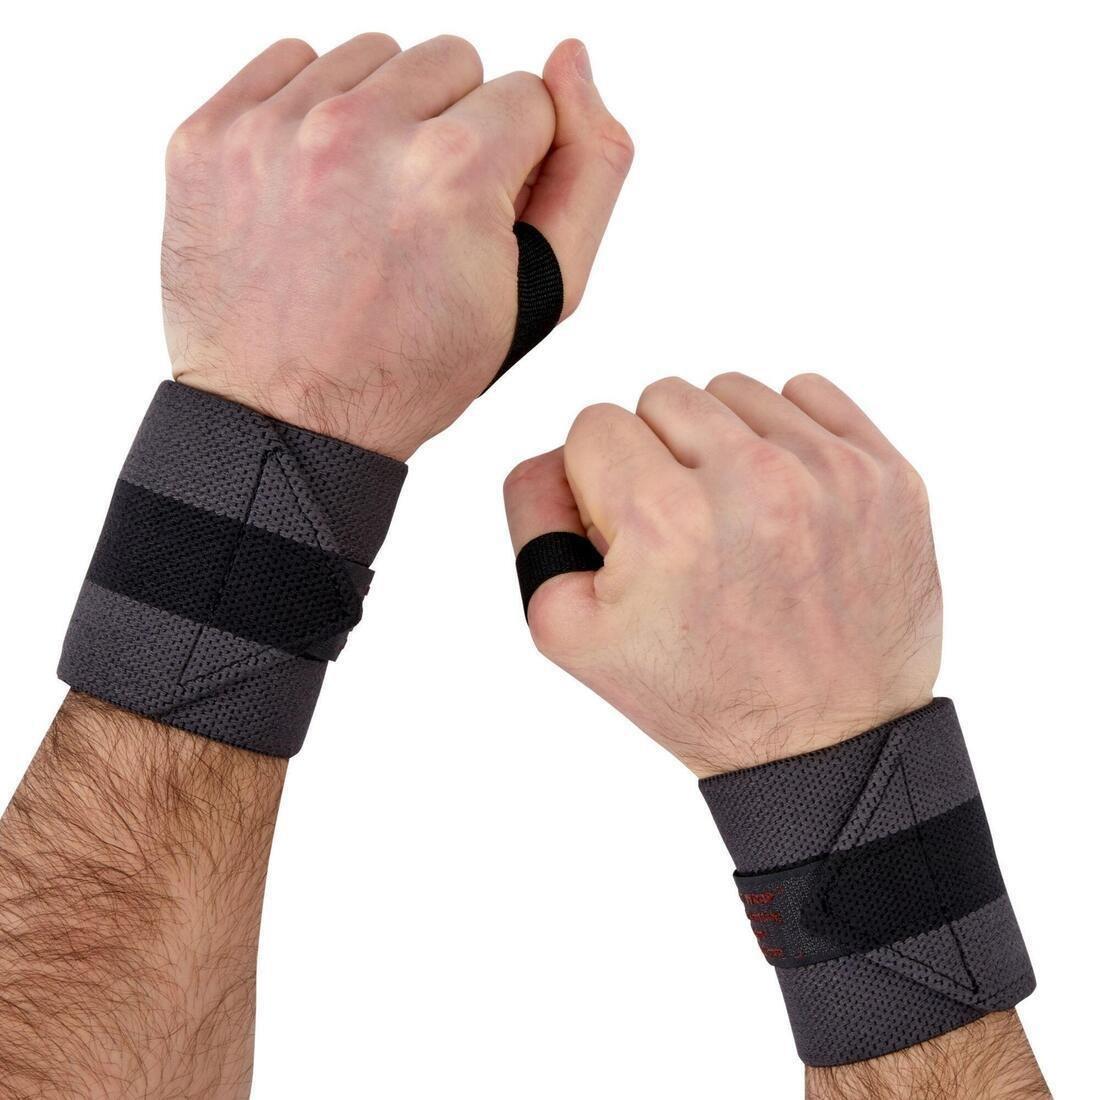 DOMYOS - Weight Training Wrist Wrap Strap, Carbon Grey